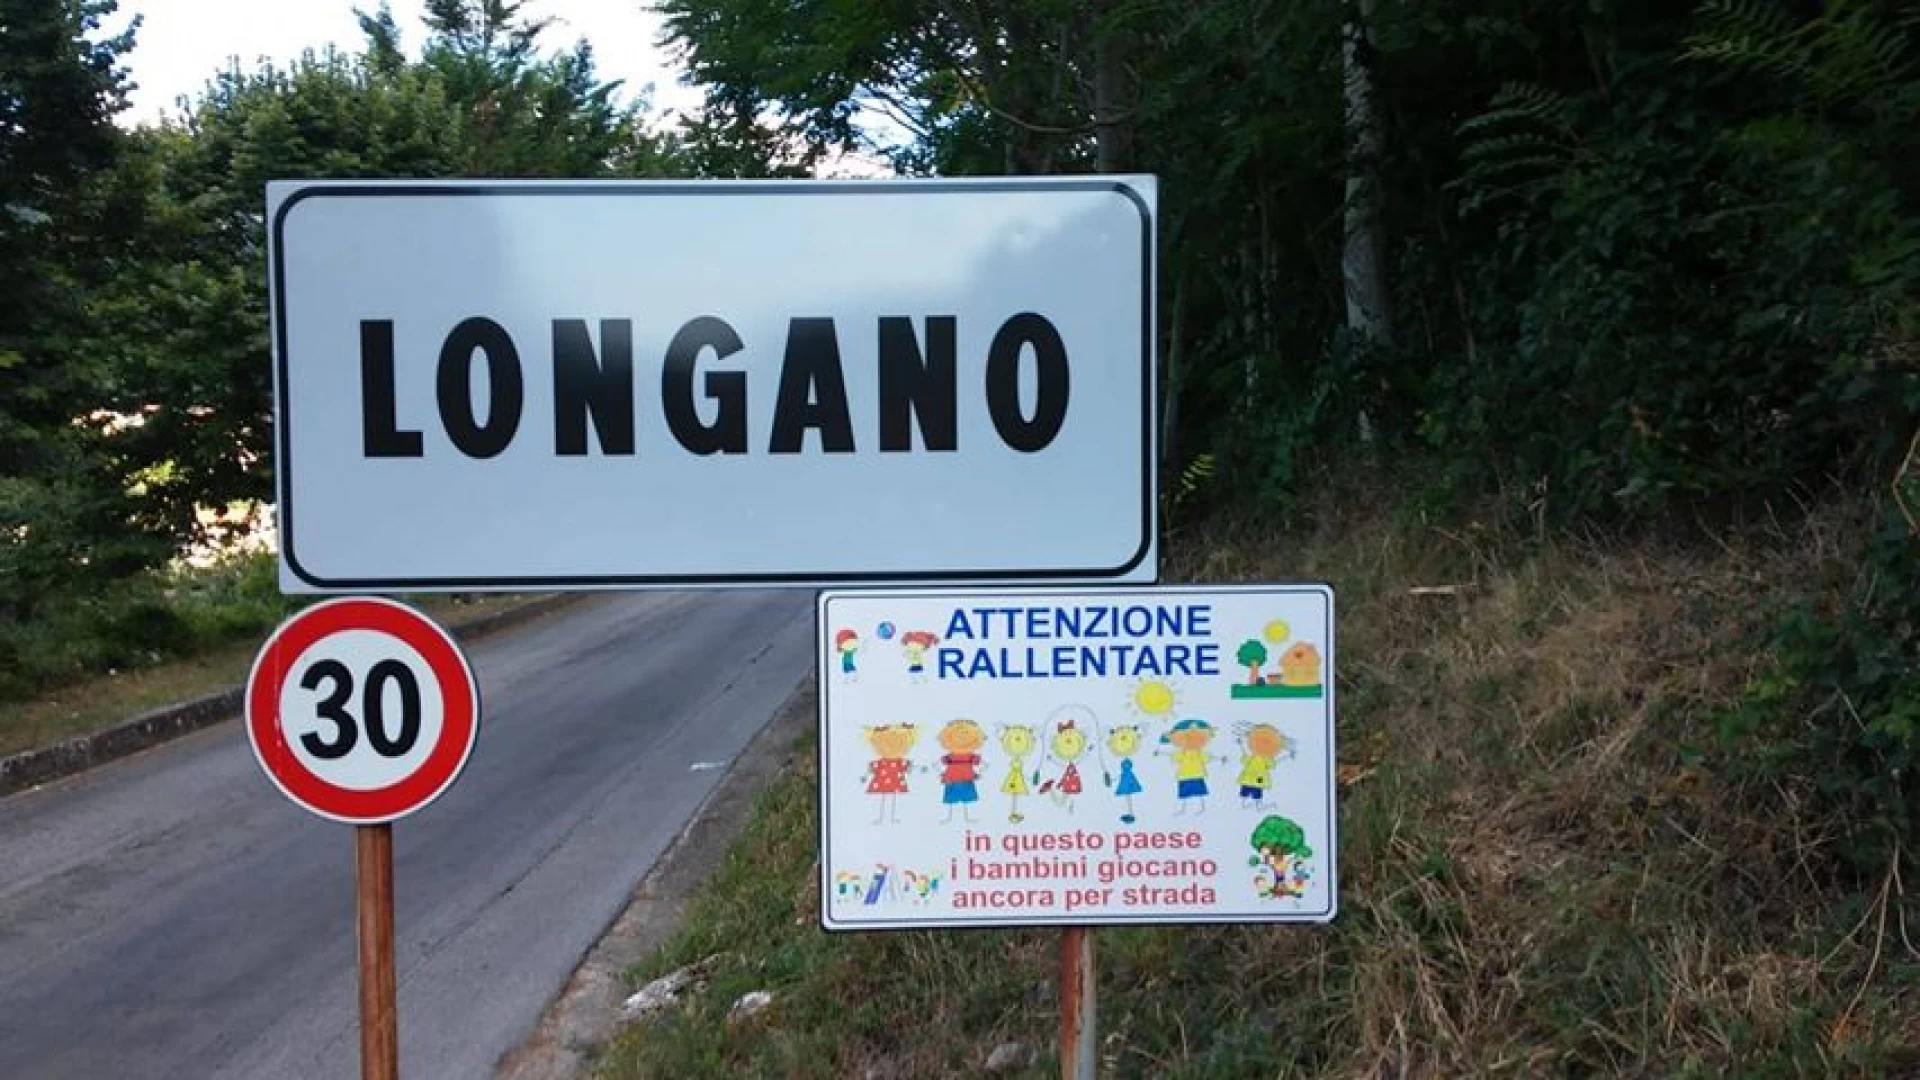 Longano: il comune installa segnaletica stradale pro-bimbi all’ingresso del paese. Limite di 30Km orari dove giocano i piccoli per strada.